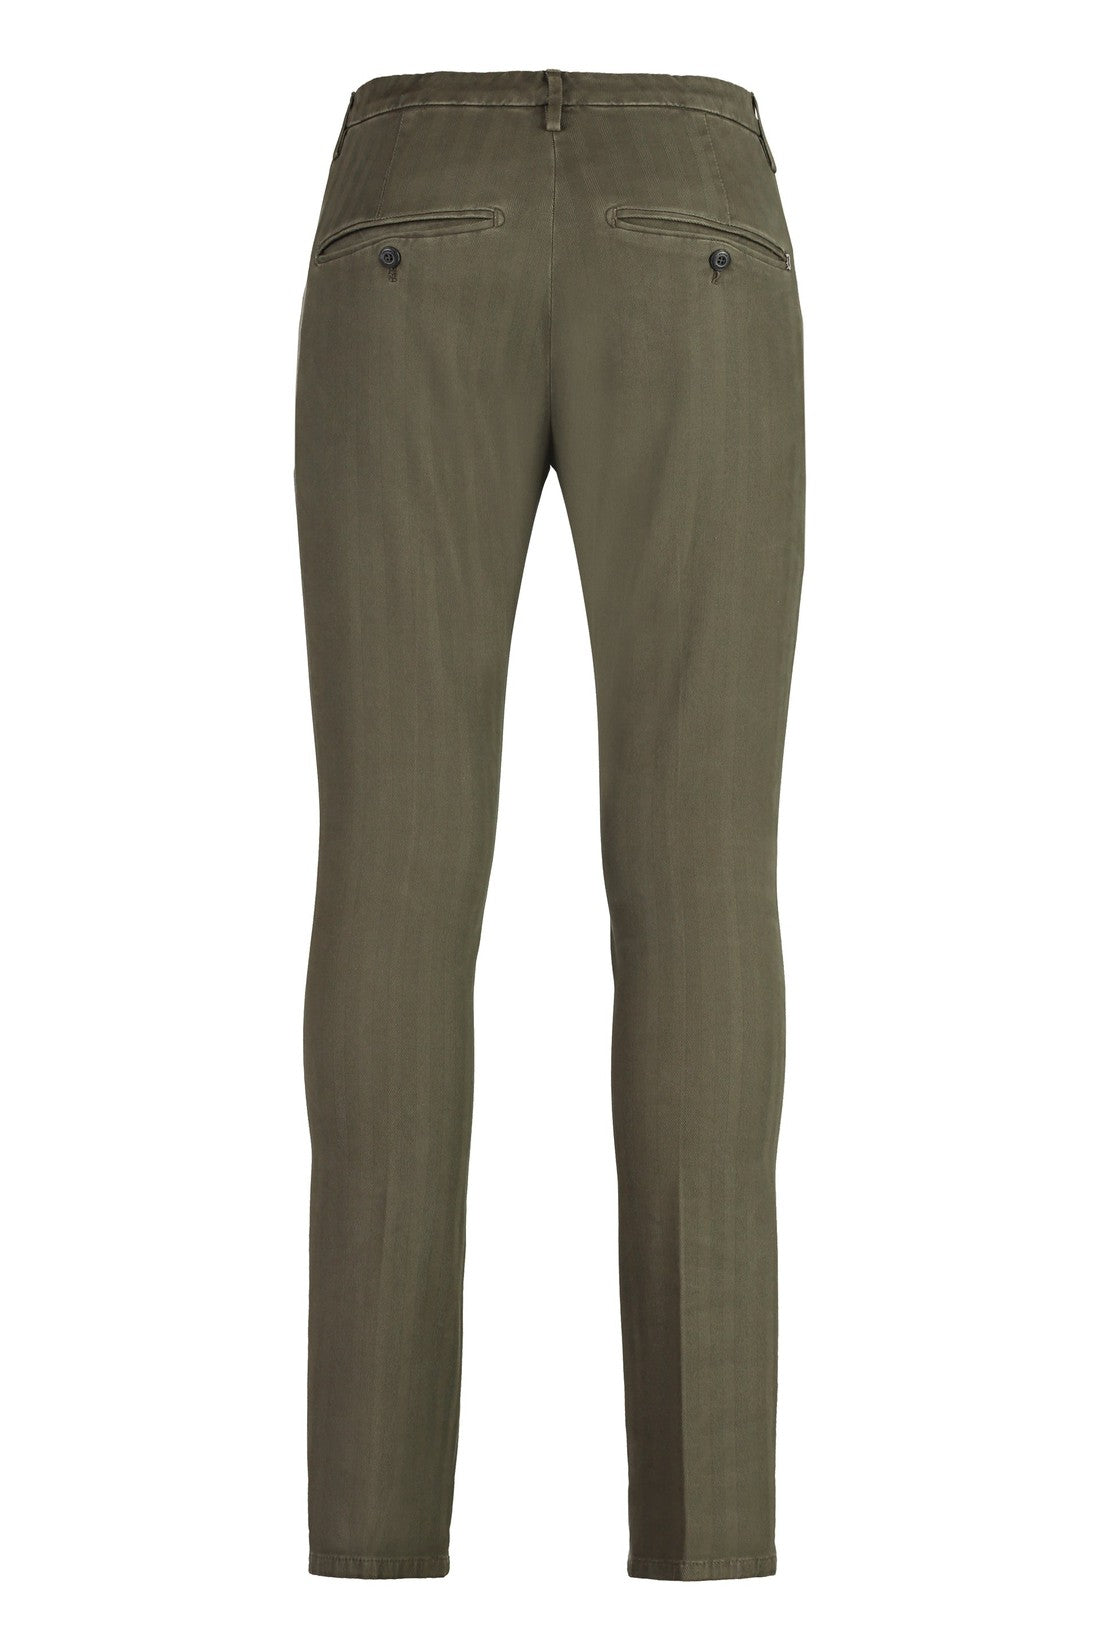 Dondup-OUTLET-SALE-Gaubert cotton blend trousers-ARCHIVIST